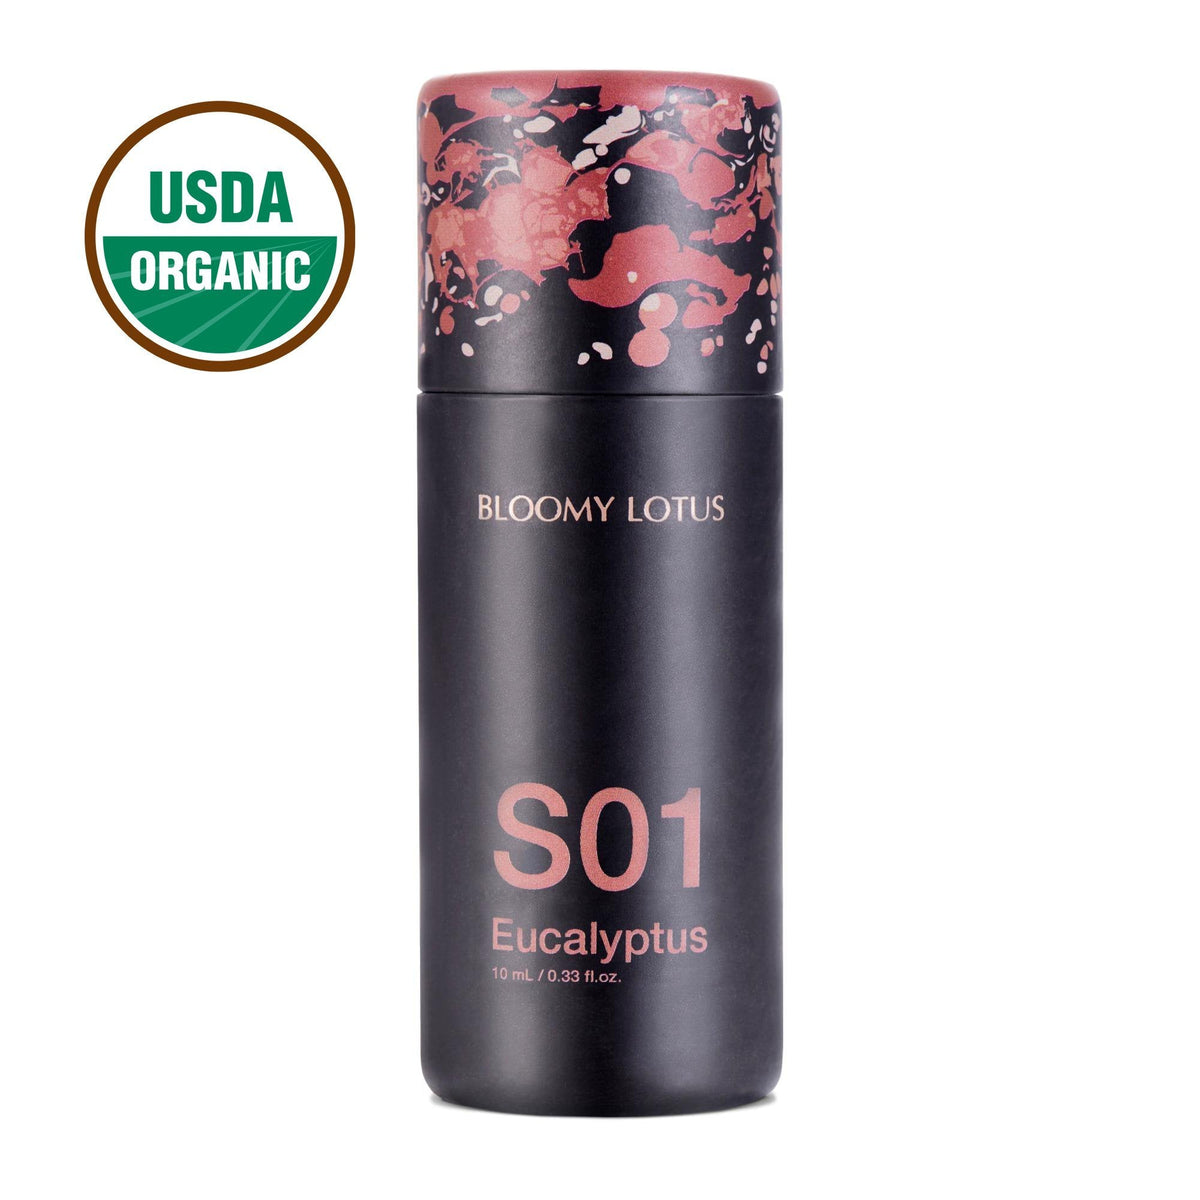 Aromatherapy Bloomy Lotus S01 Eucalyptus Essential Oil, 10ml